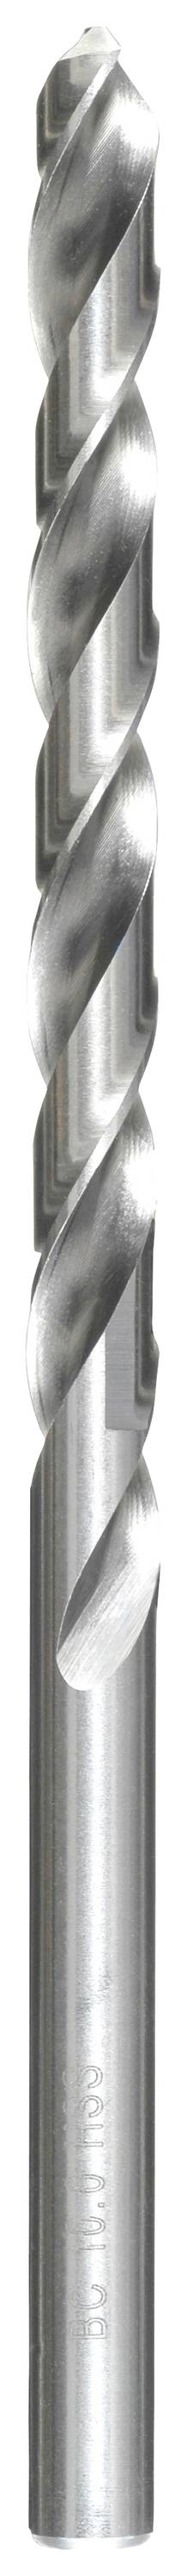 KWB 217085 HSS Spiralbohrer 1 Stück 8.5 mm Gesamtlänge 165 mm DIN 340 Zahnkranzbohrfutter 1 St.